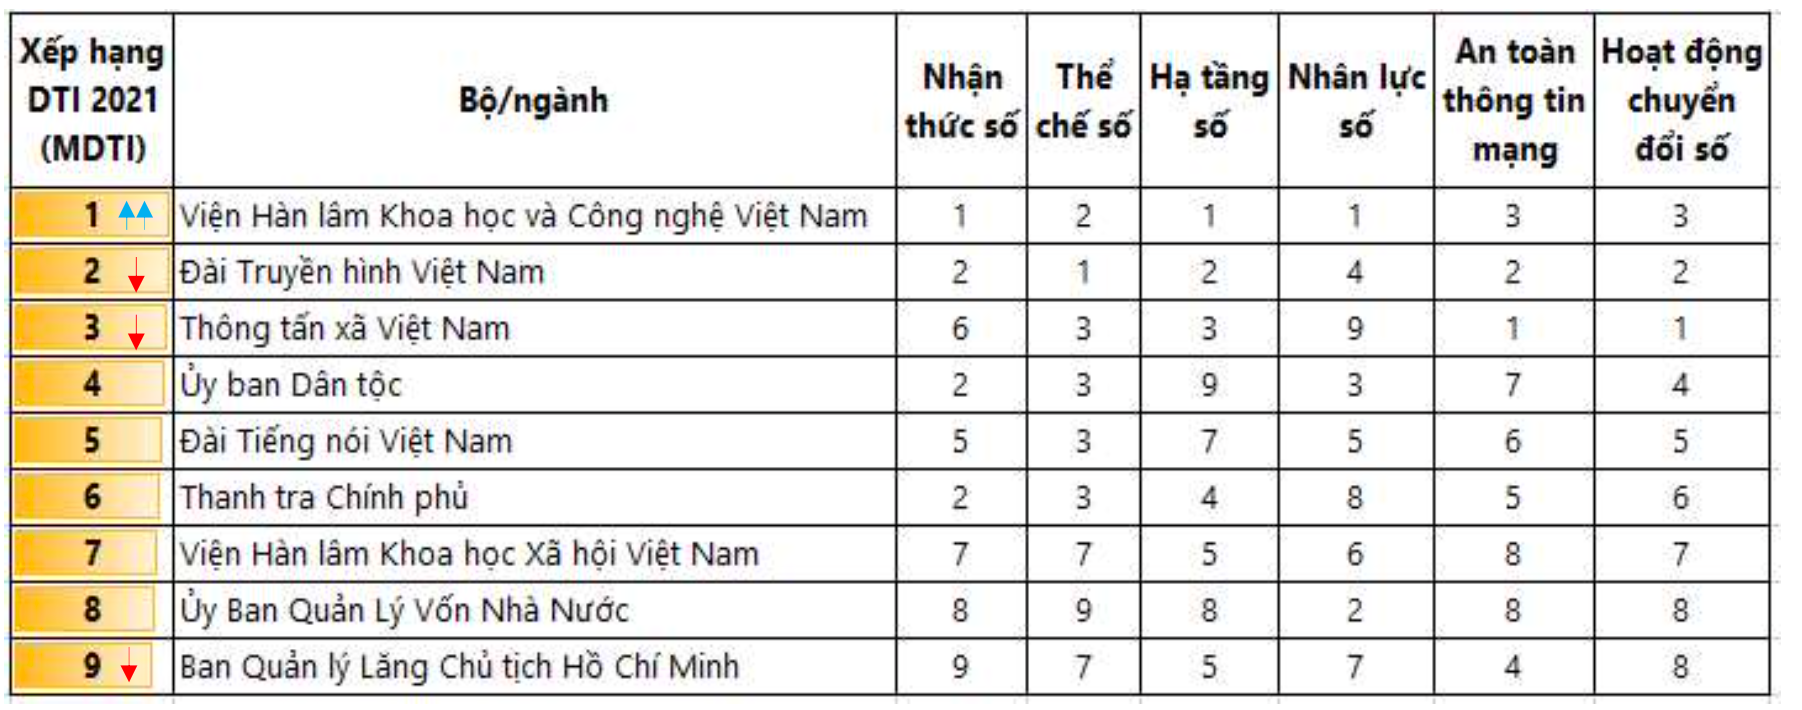 Đà Nẵng dẫn đầu về chỉ số CĐS năm 2021 - Ảnh 3.